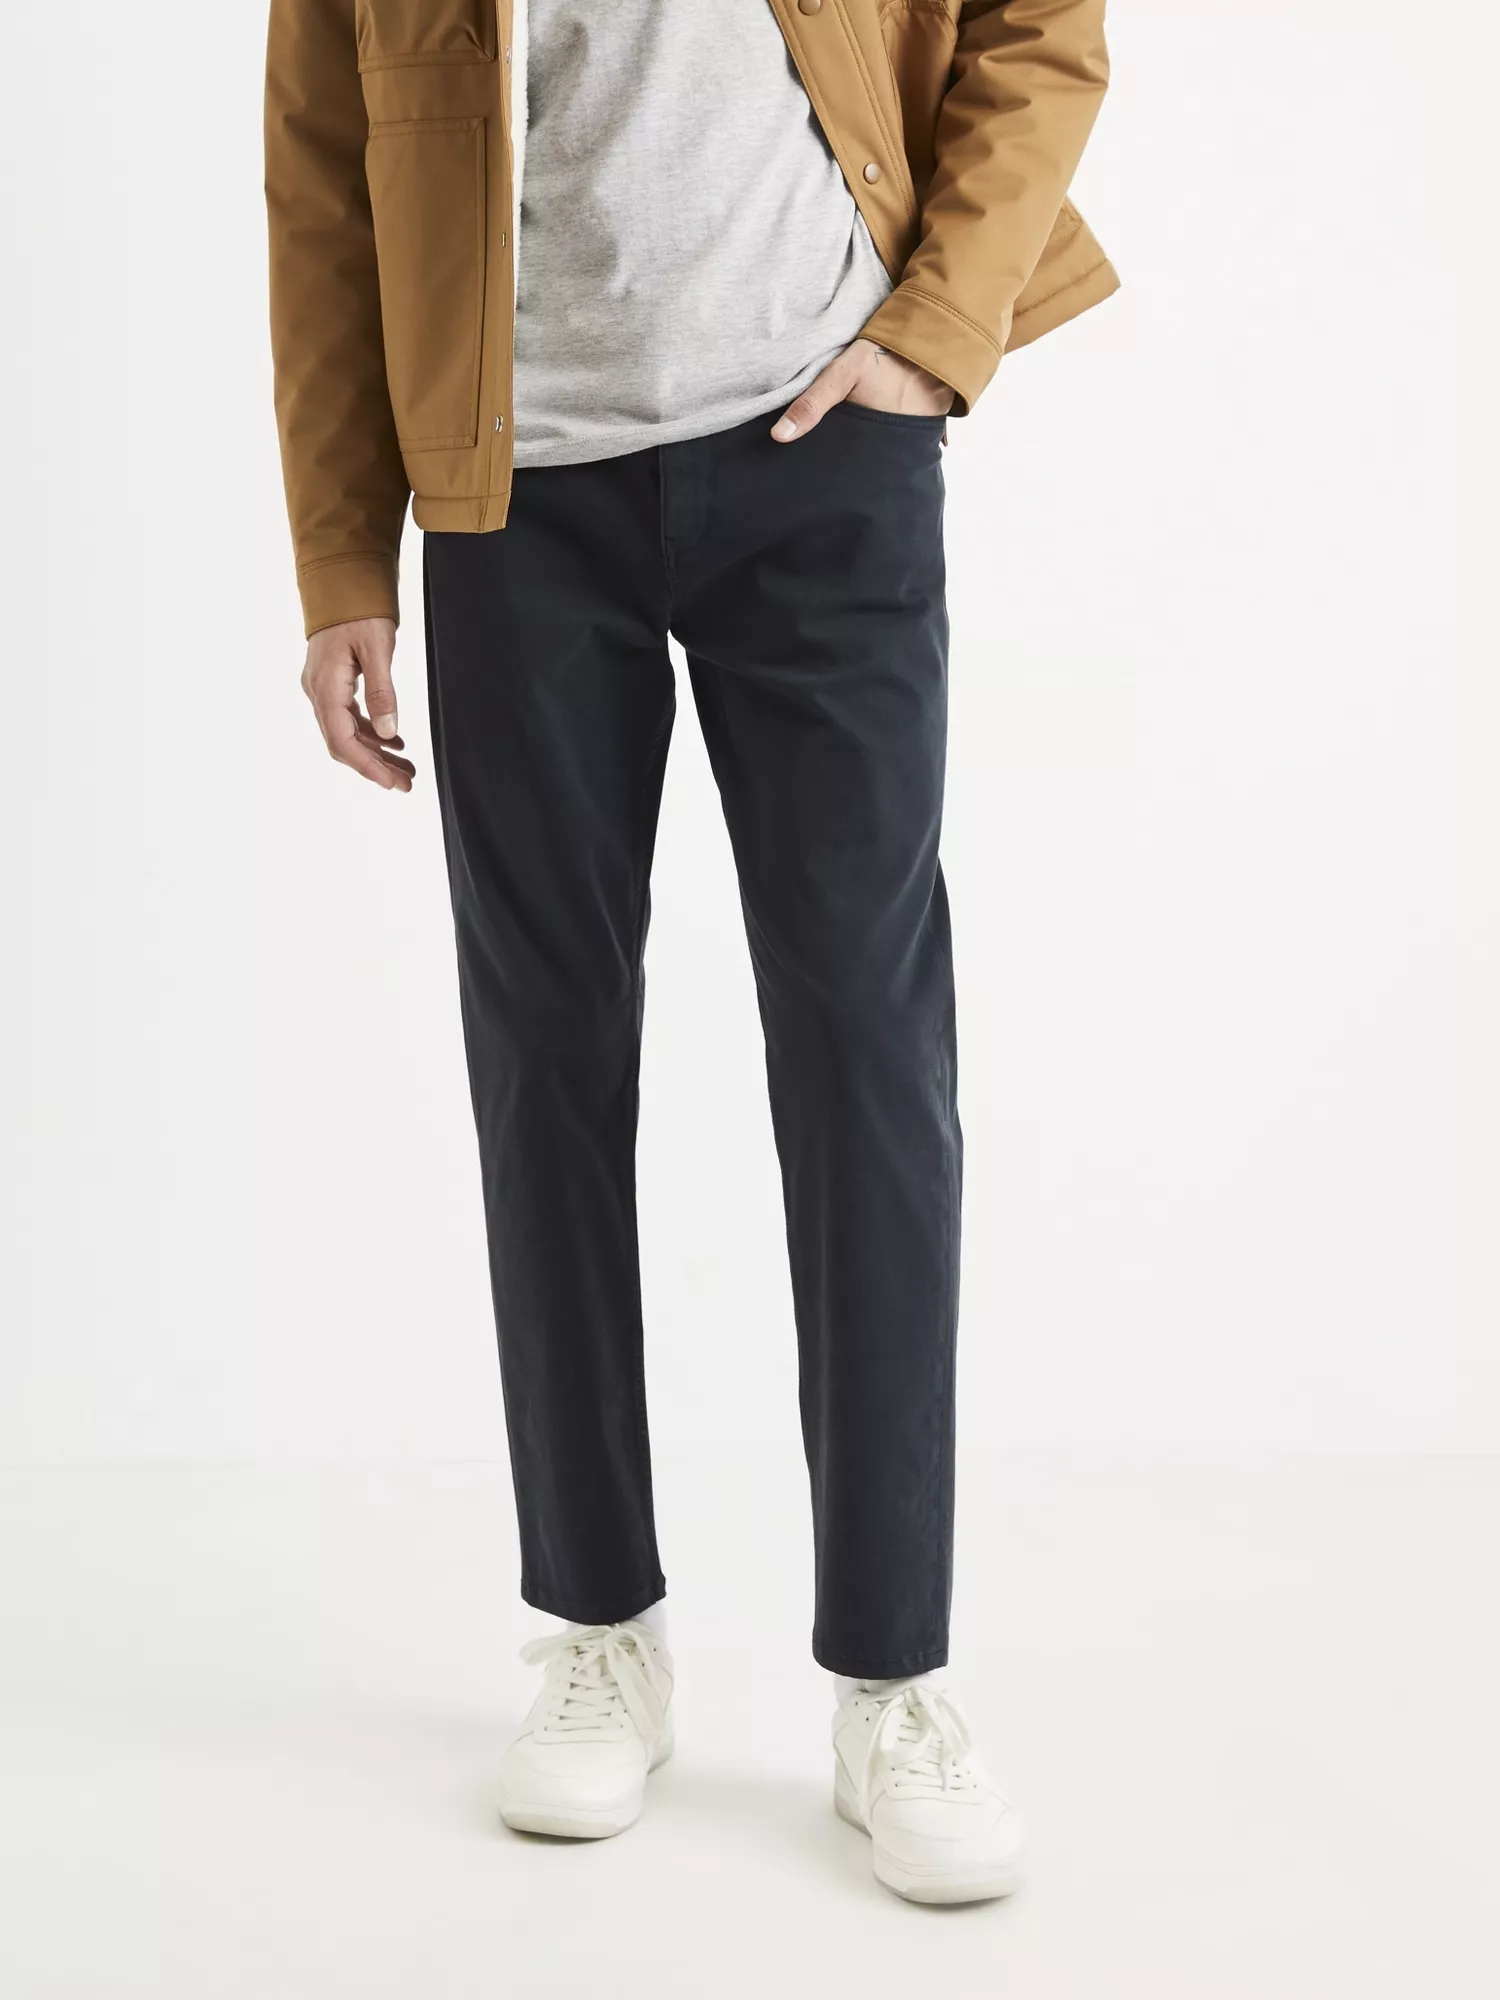 Kalhoty Totravel slim (1)